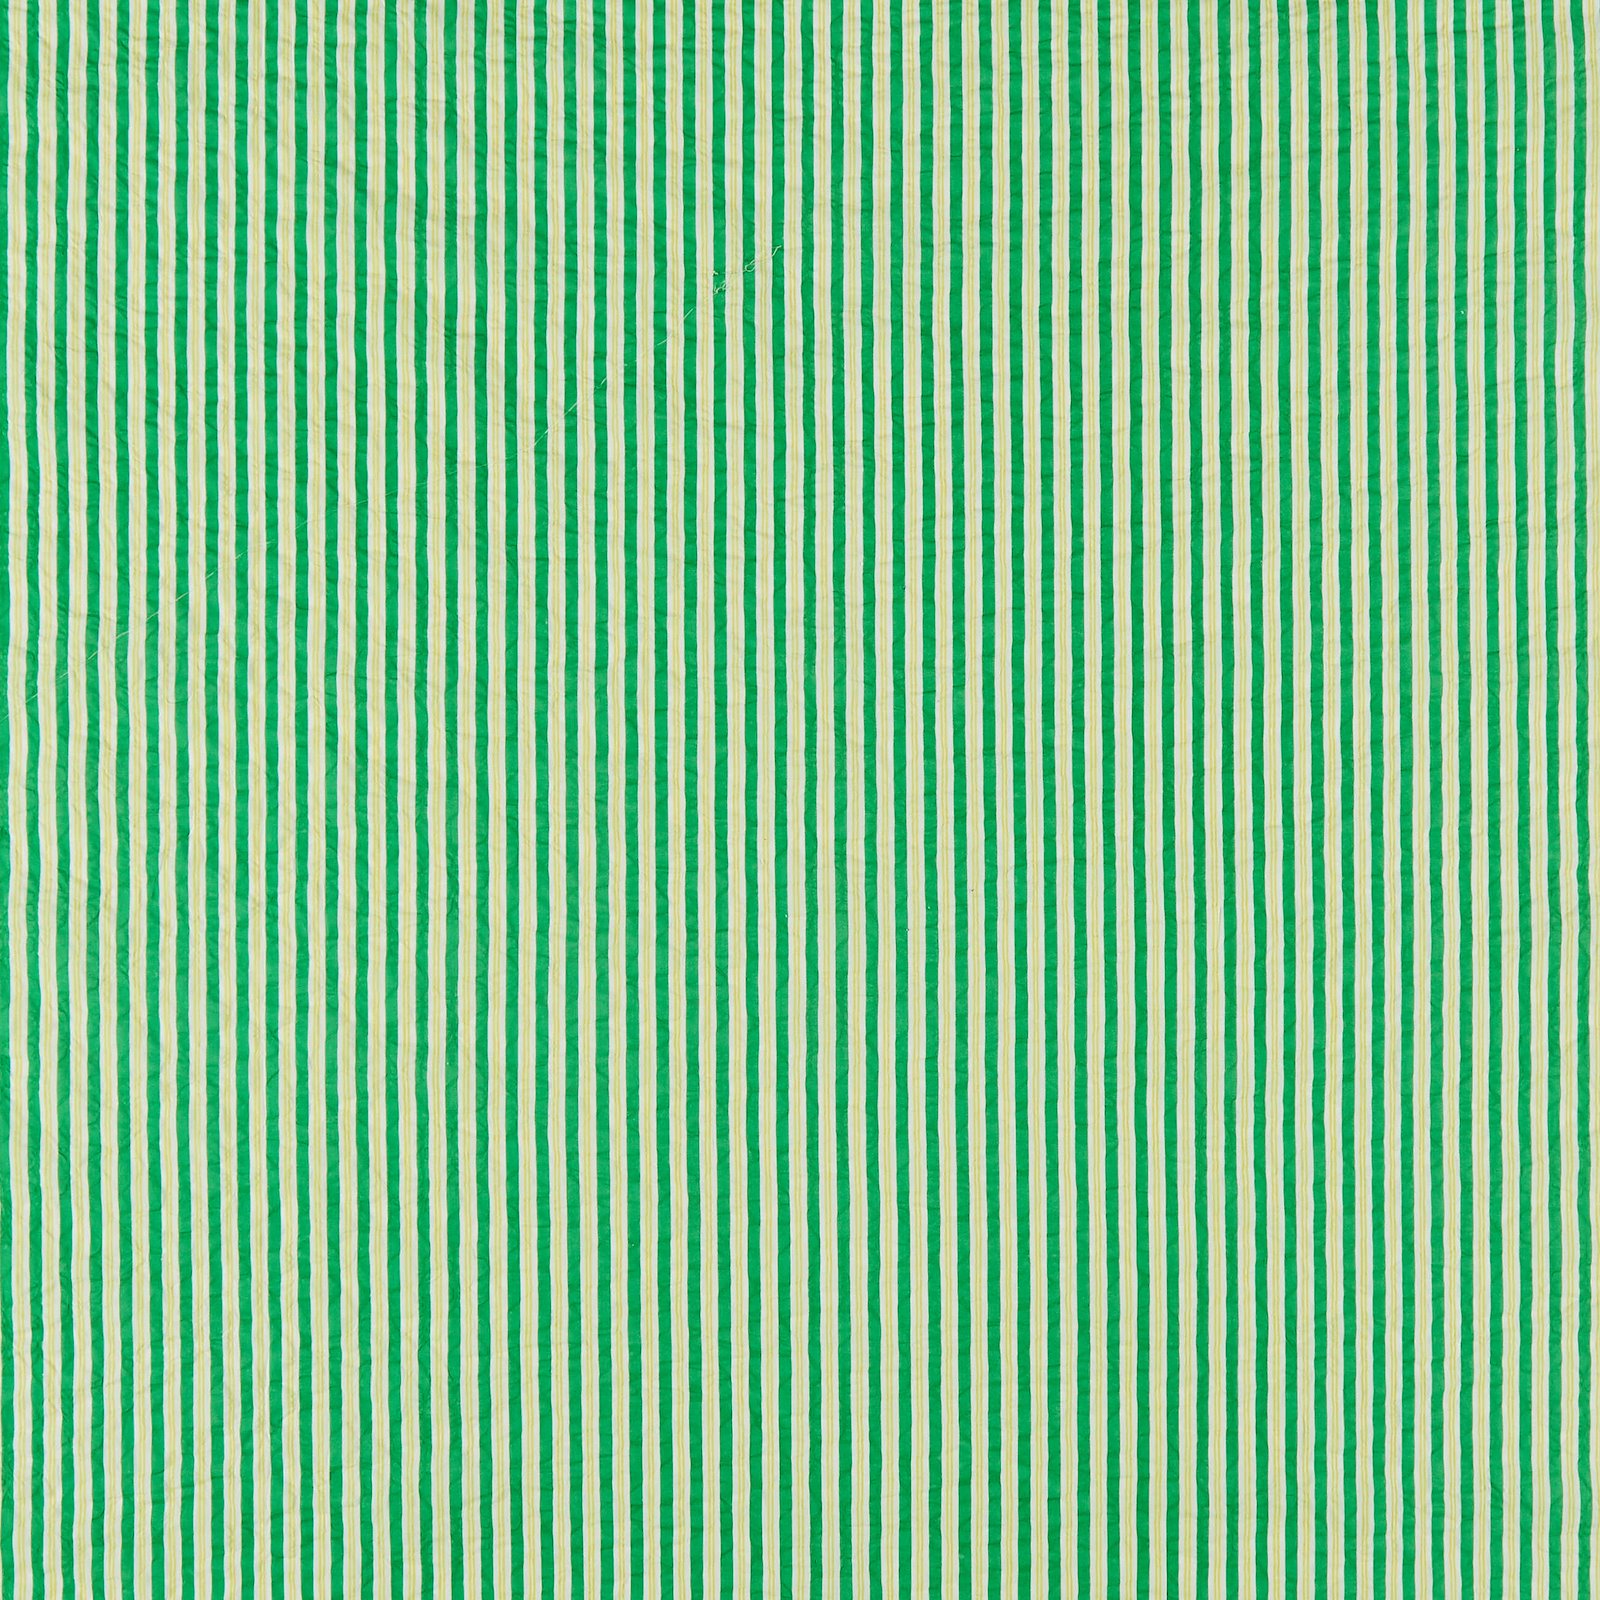 Seersucker grün gelb weiß gestreift 580120_pack_sp